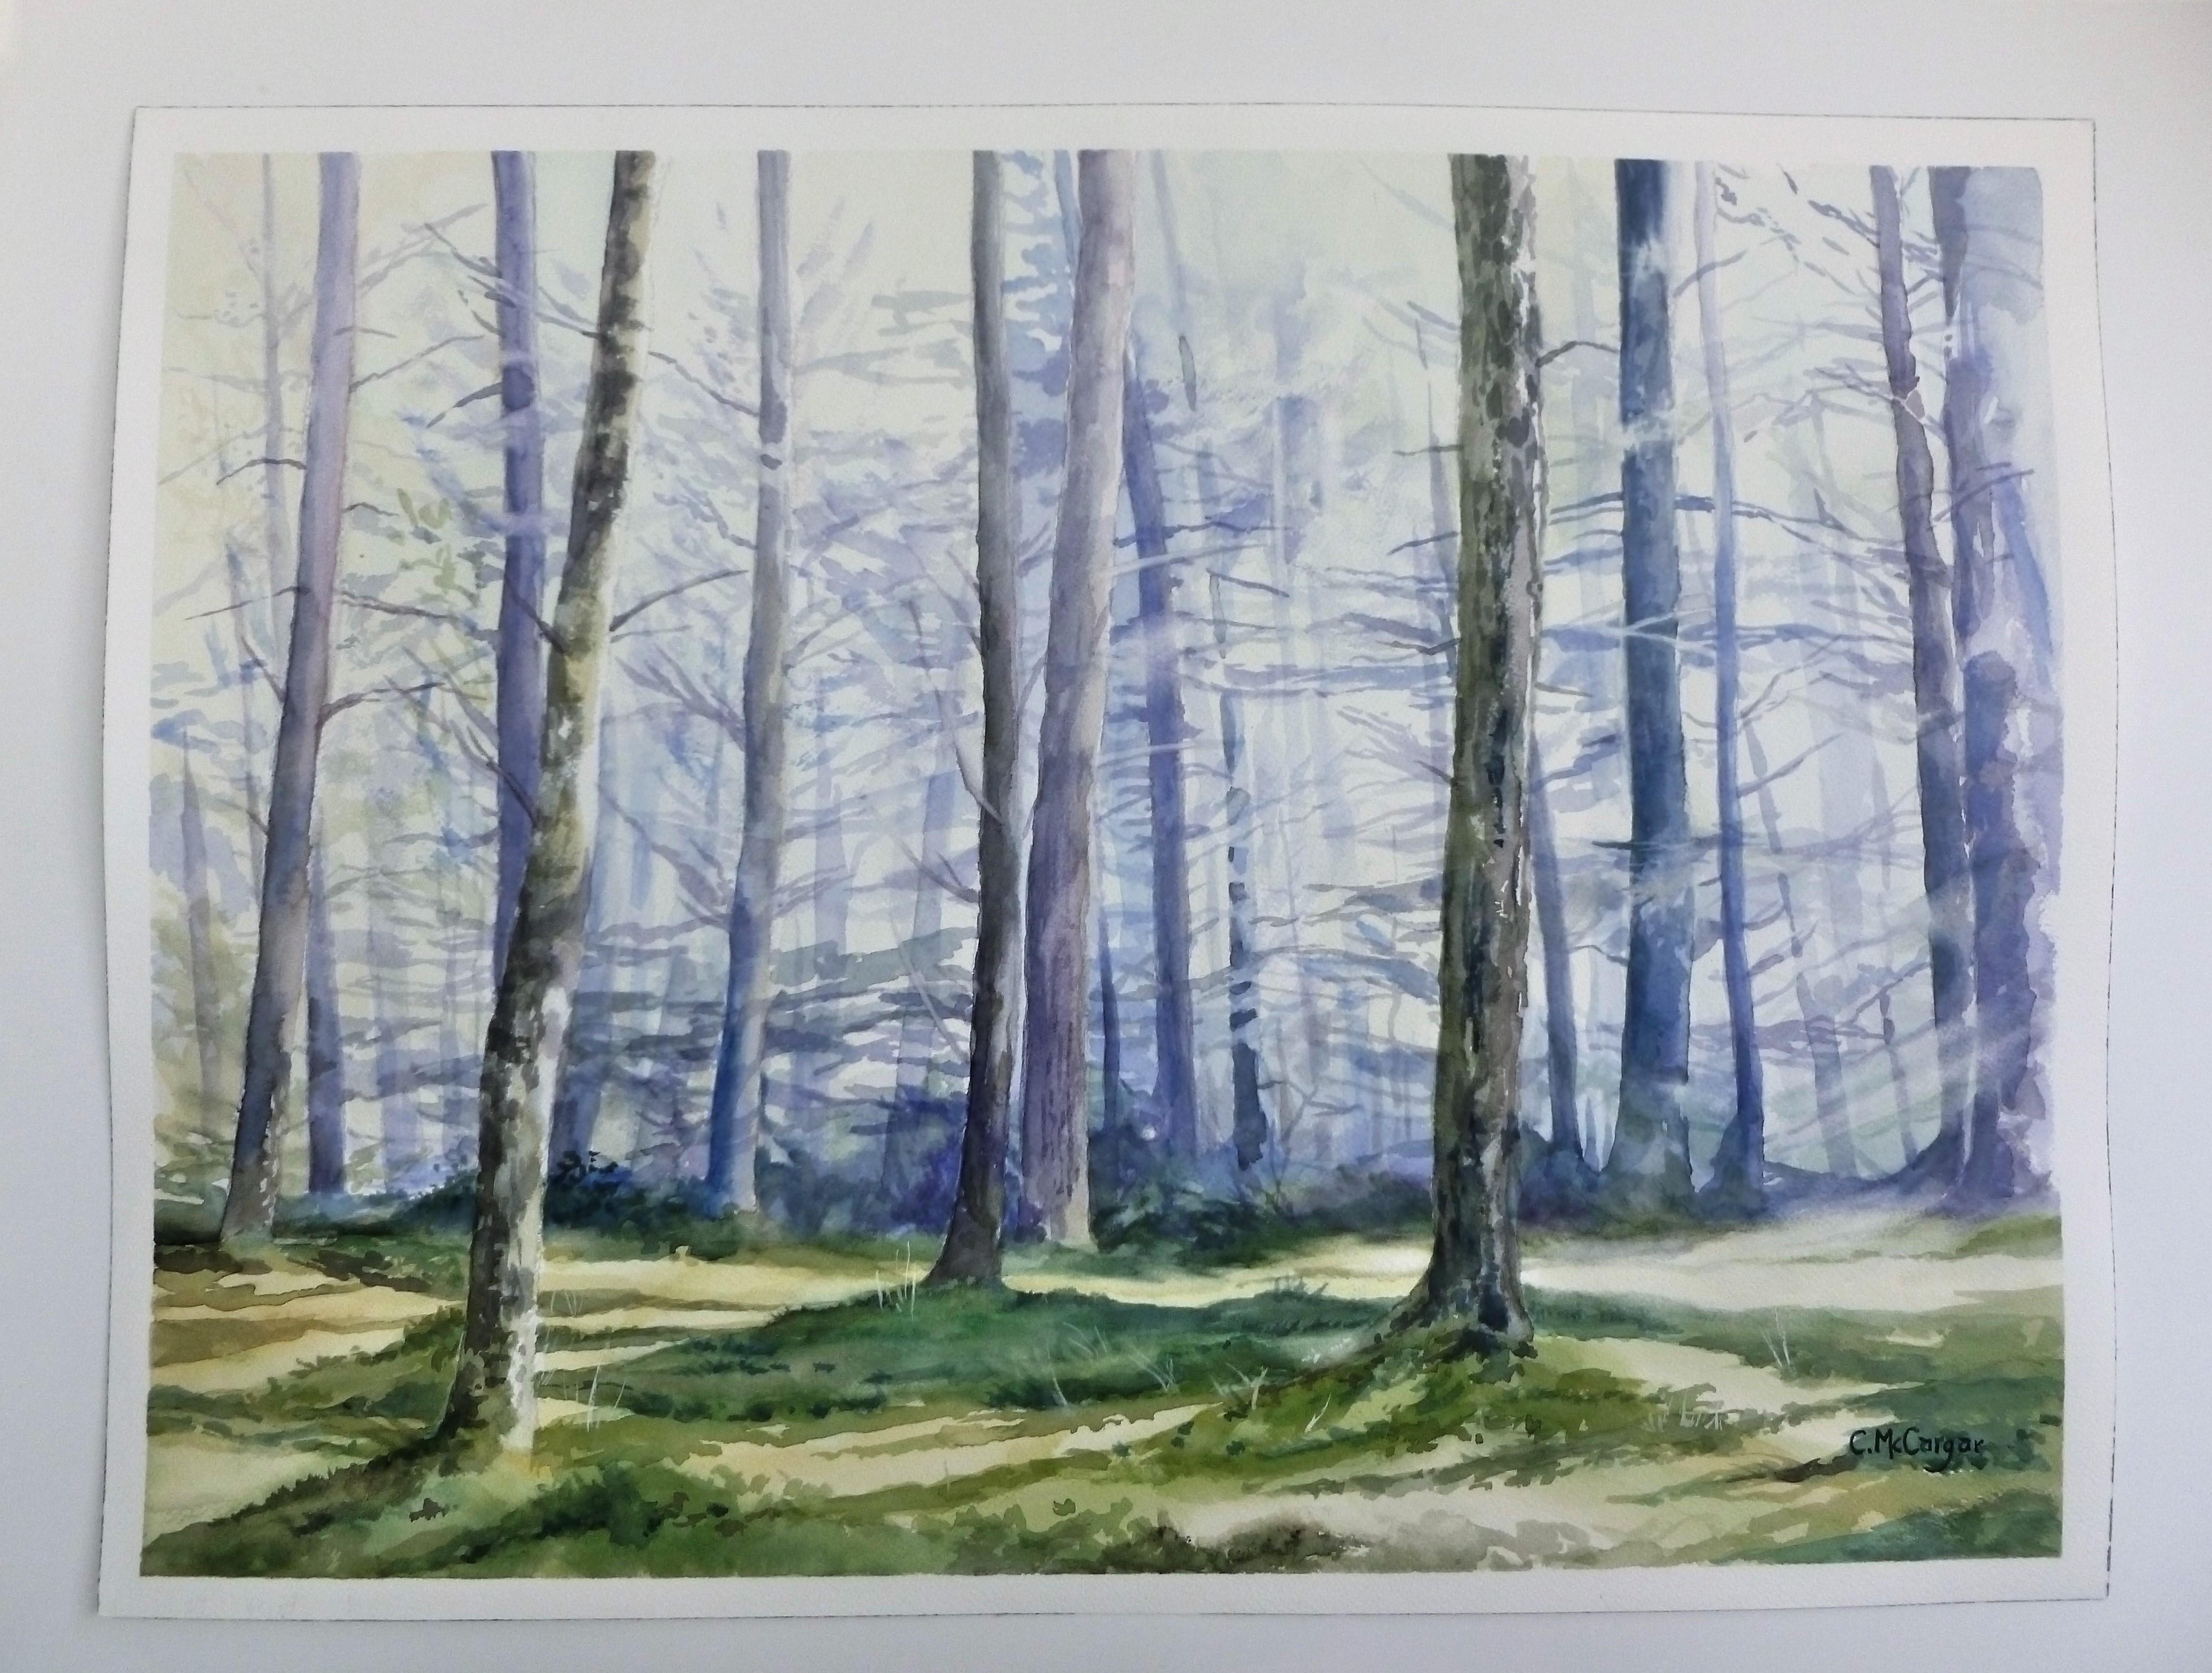 <p>Kommentare der Künstlerin<br>Die Künstlerin Catherine McCargar zeigt eine verträumte Waldlichtung in zarten Farben. Die Bäume säumen die Landschaft und werfen Schatten auf das winterliche Terrain. Ein friedlicher und meditativer Anblick, bei dem